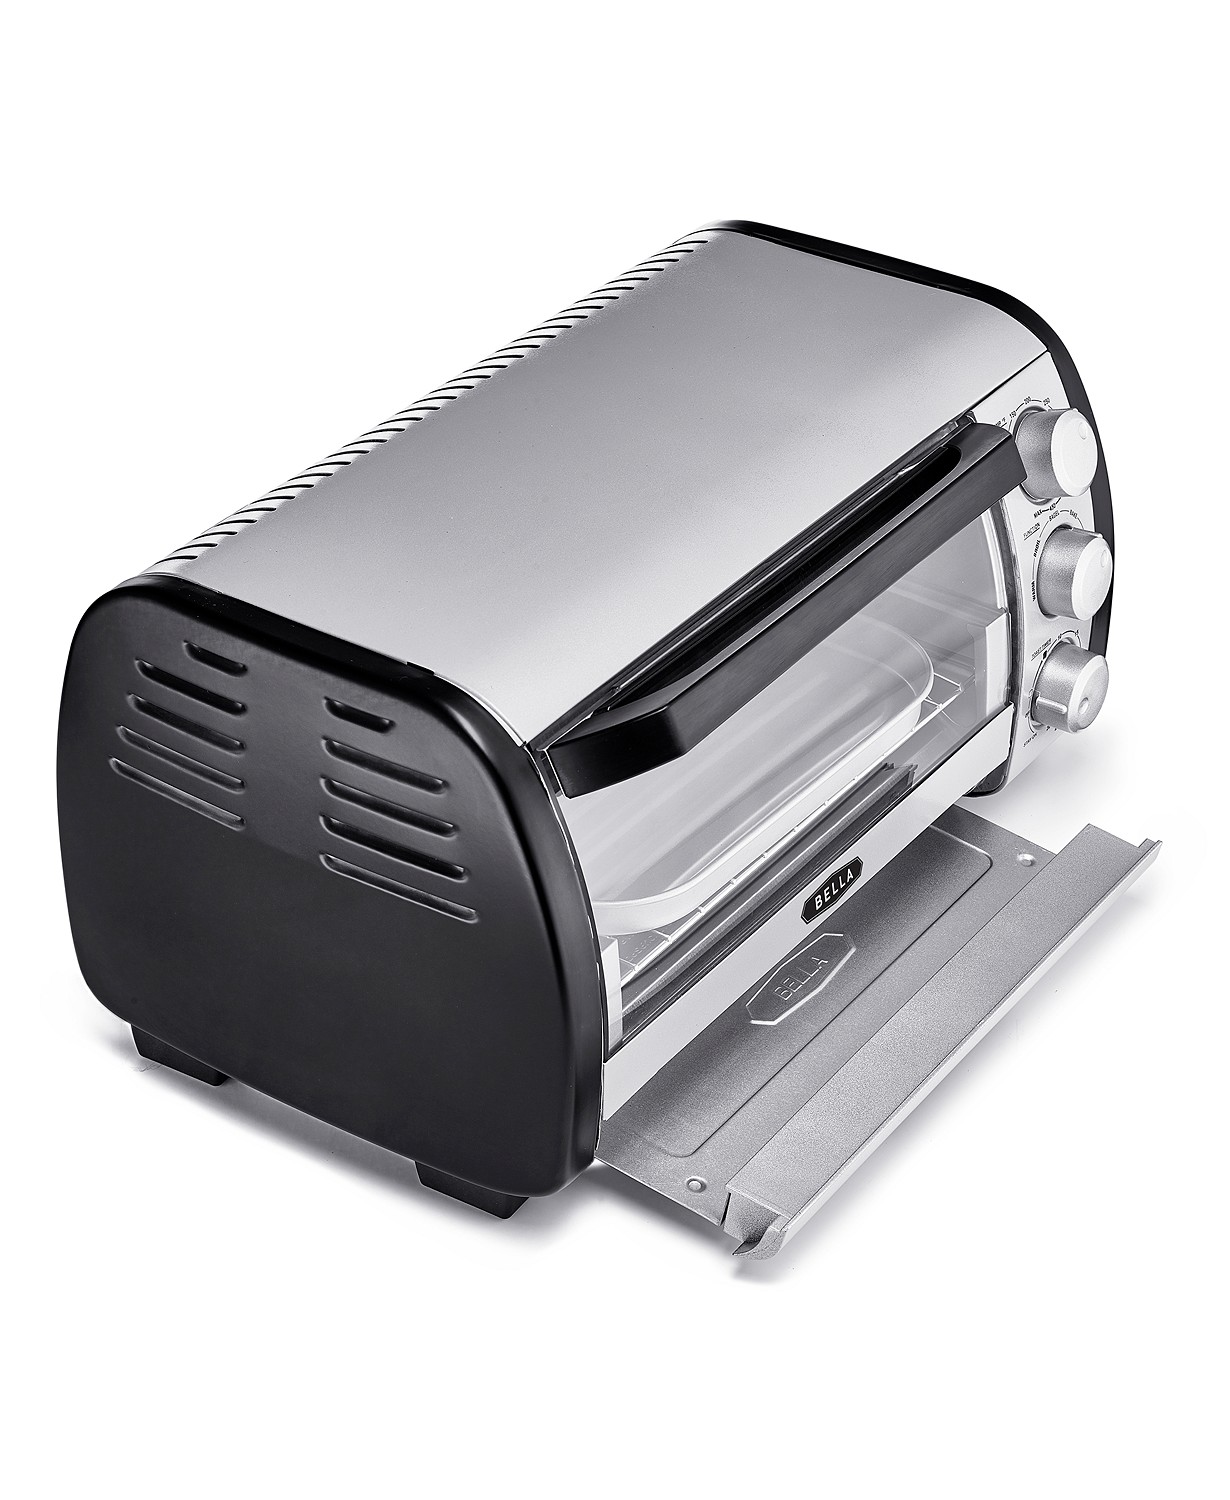 bella-4-slice-toaster-oven-in-black-silver-for-8-99-after-rebate